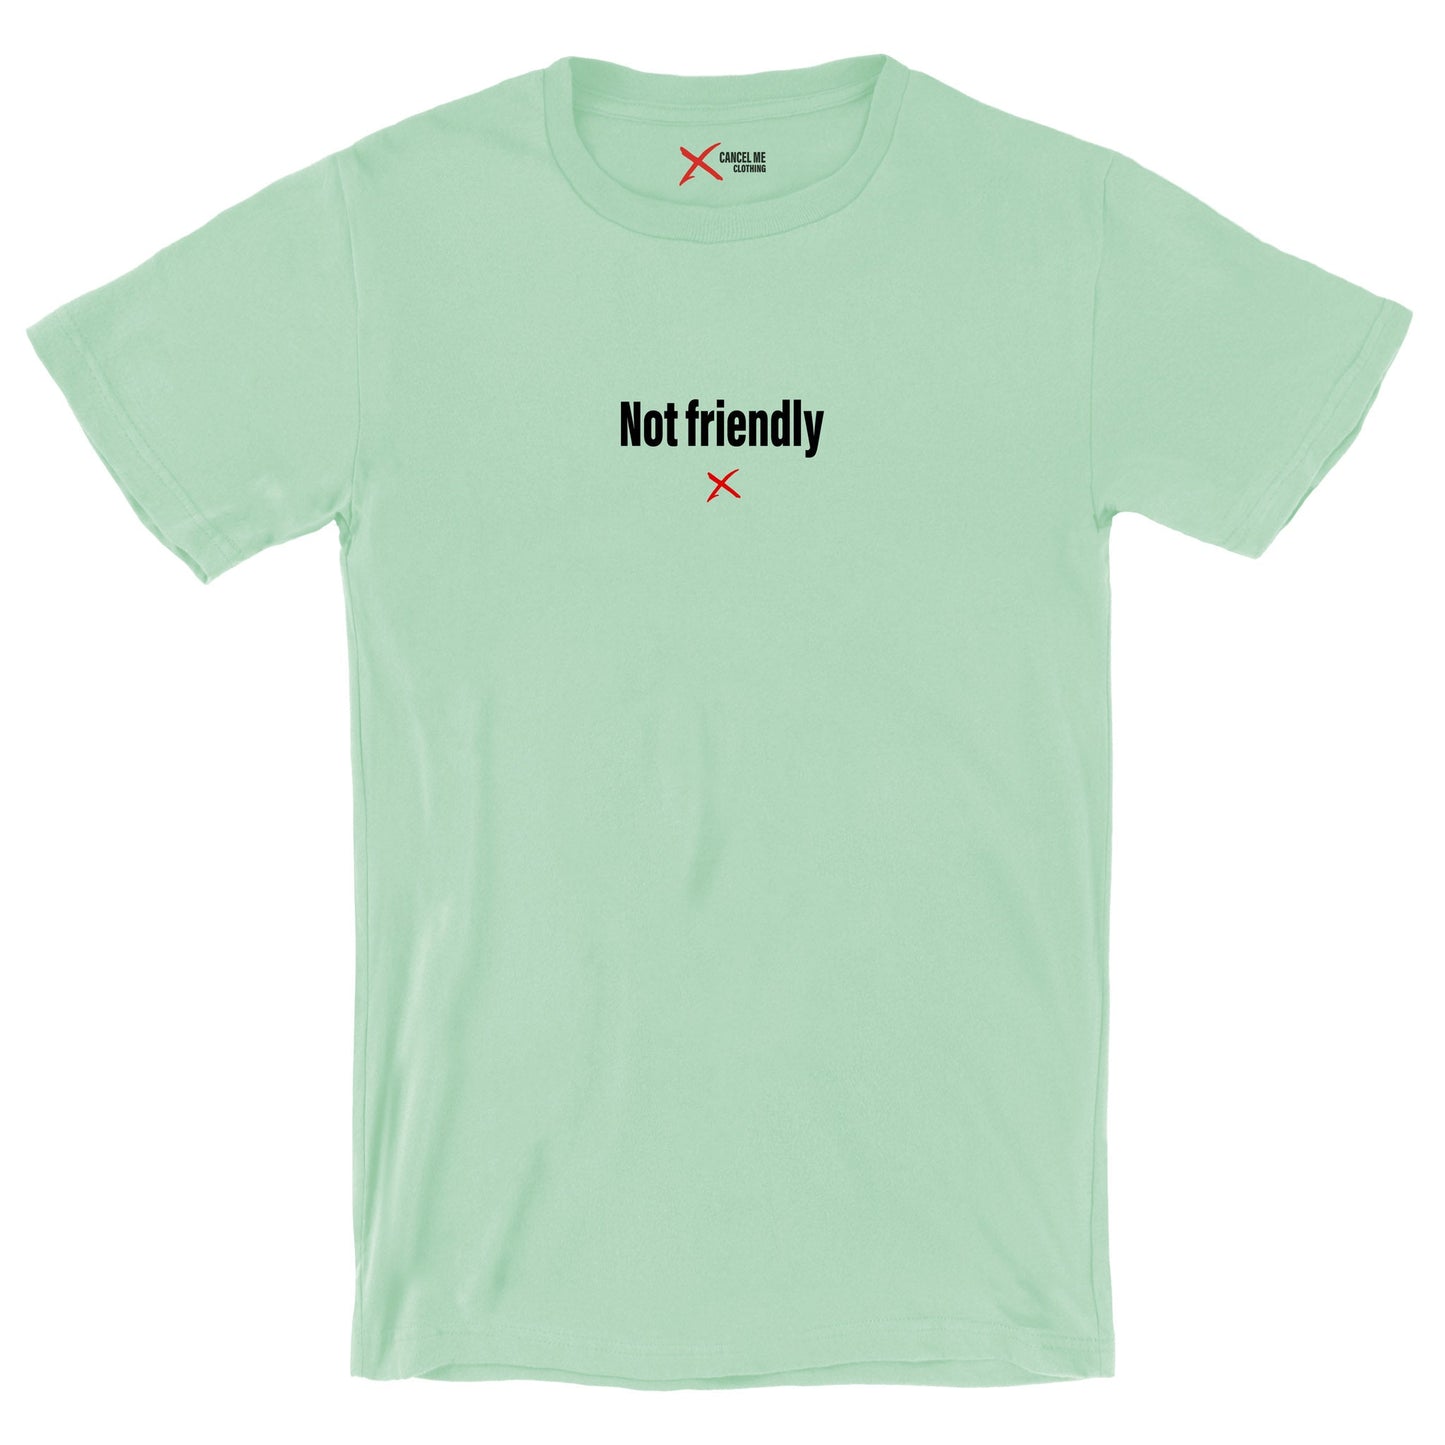 Not friendly - Shirt